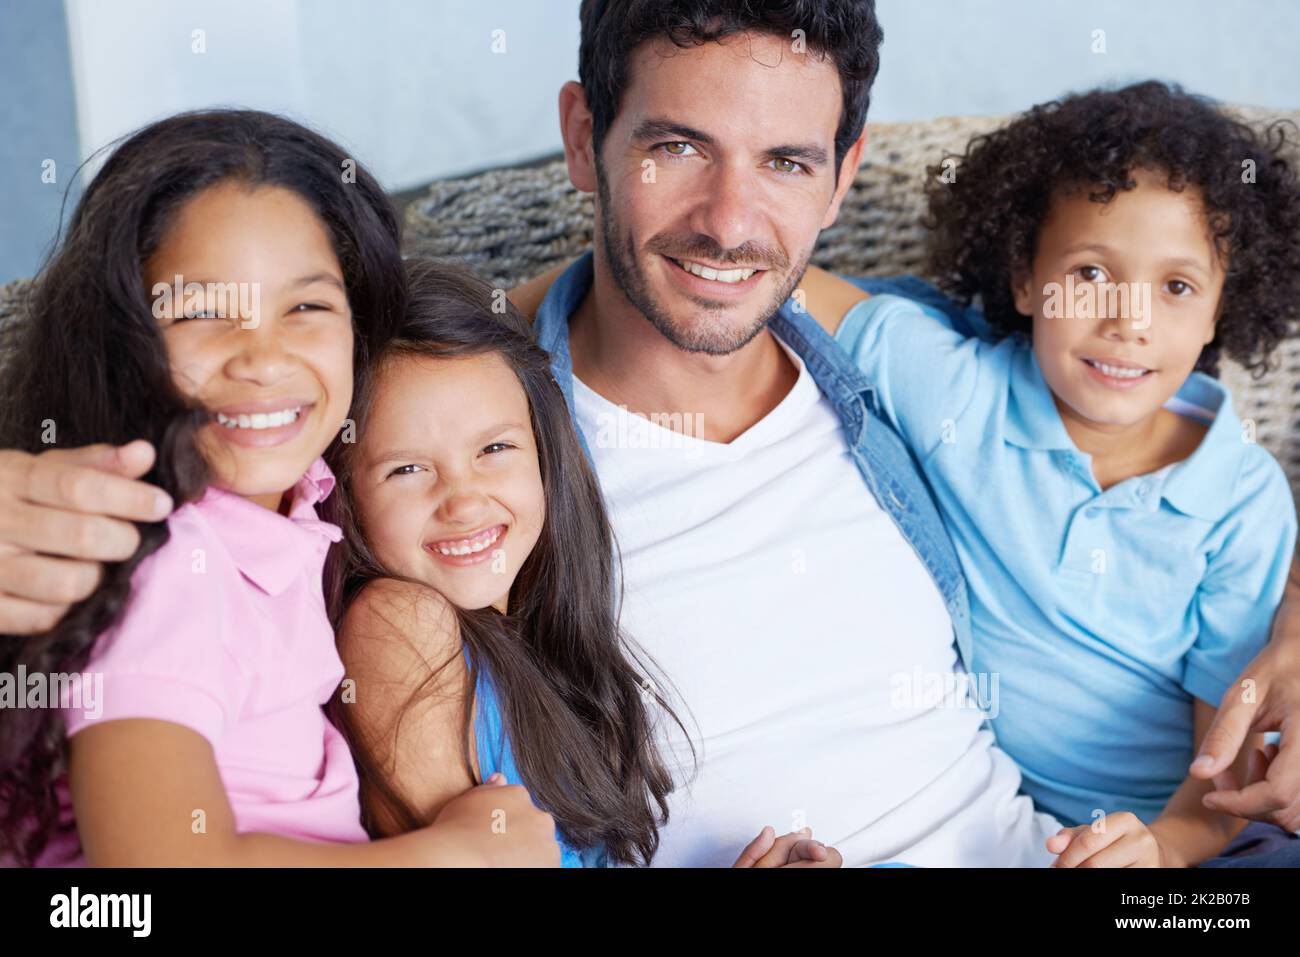 Wir teilen die stärksten Familienanleihen. Porträt einer glücklichen alleinerziehenden Familie, die auf einem Sofa sitzt und die Kamera anlächelt. Stockfoto